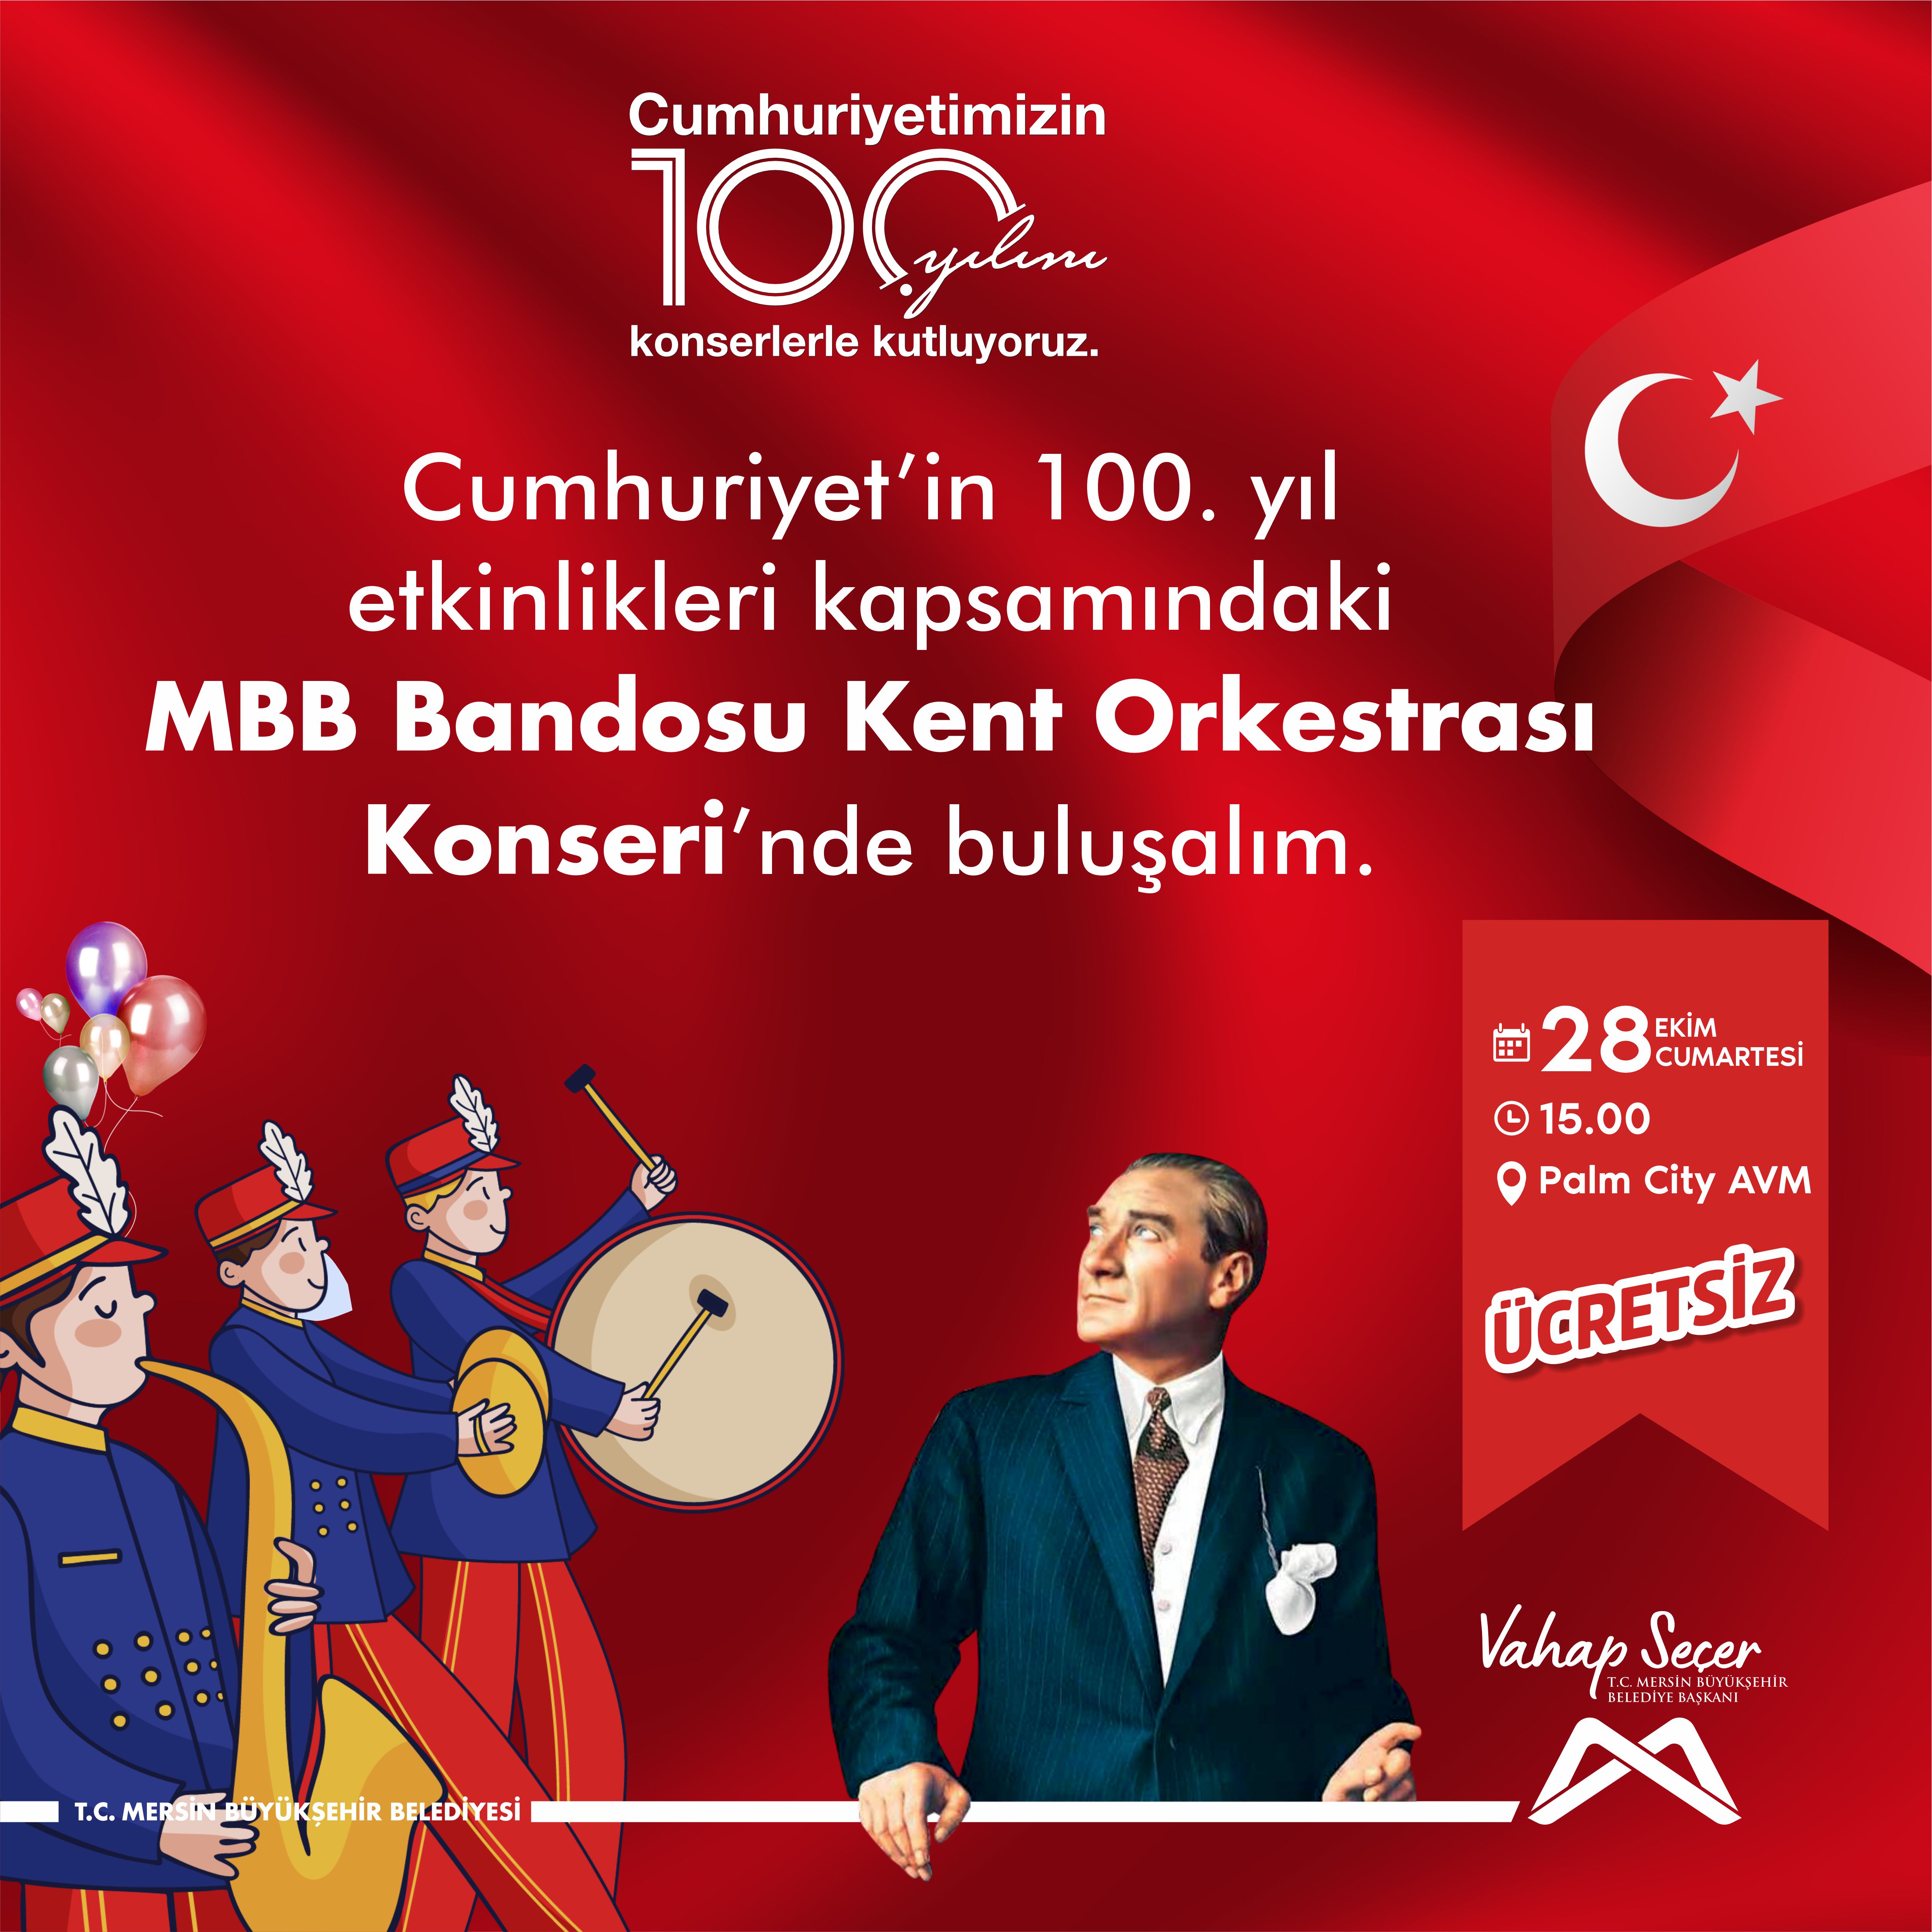 Cumhuriyet'in 100. yıl etkinlikleri kapsamında MBB Bandosu Kent Orkestrası Konseri'nde buluşalım.